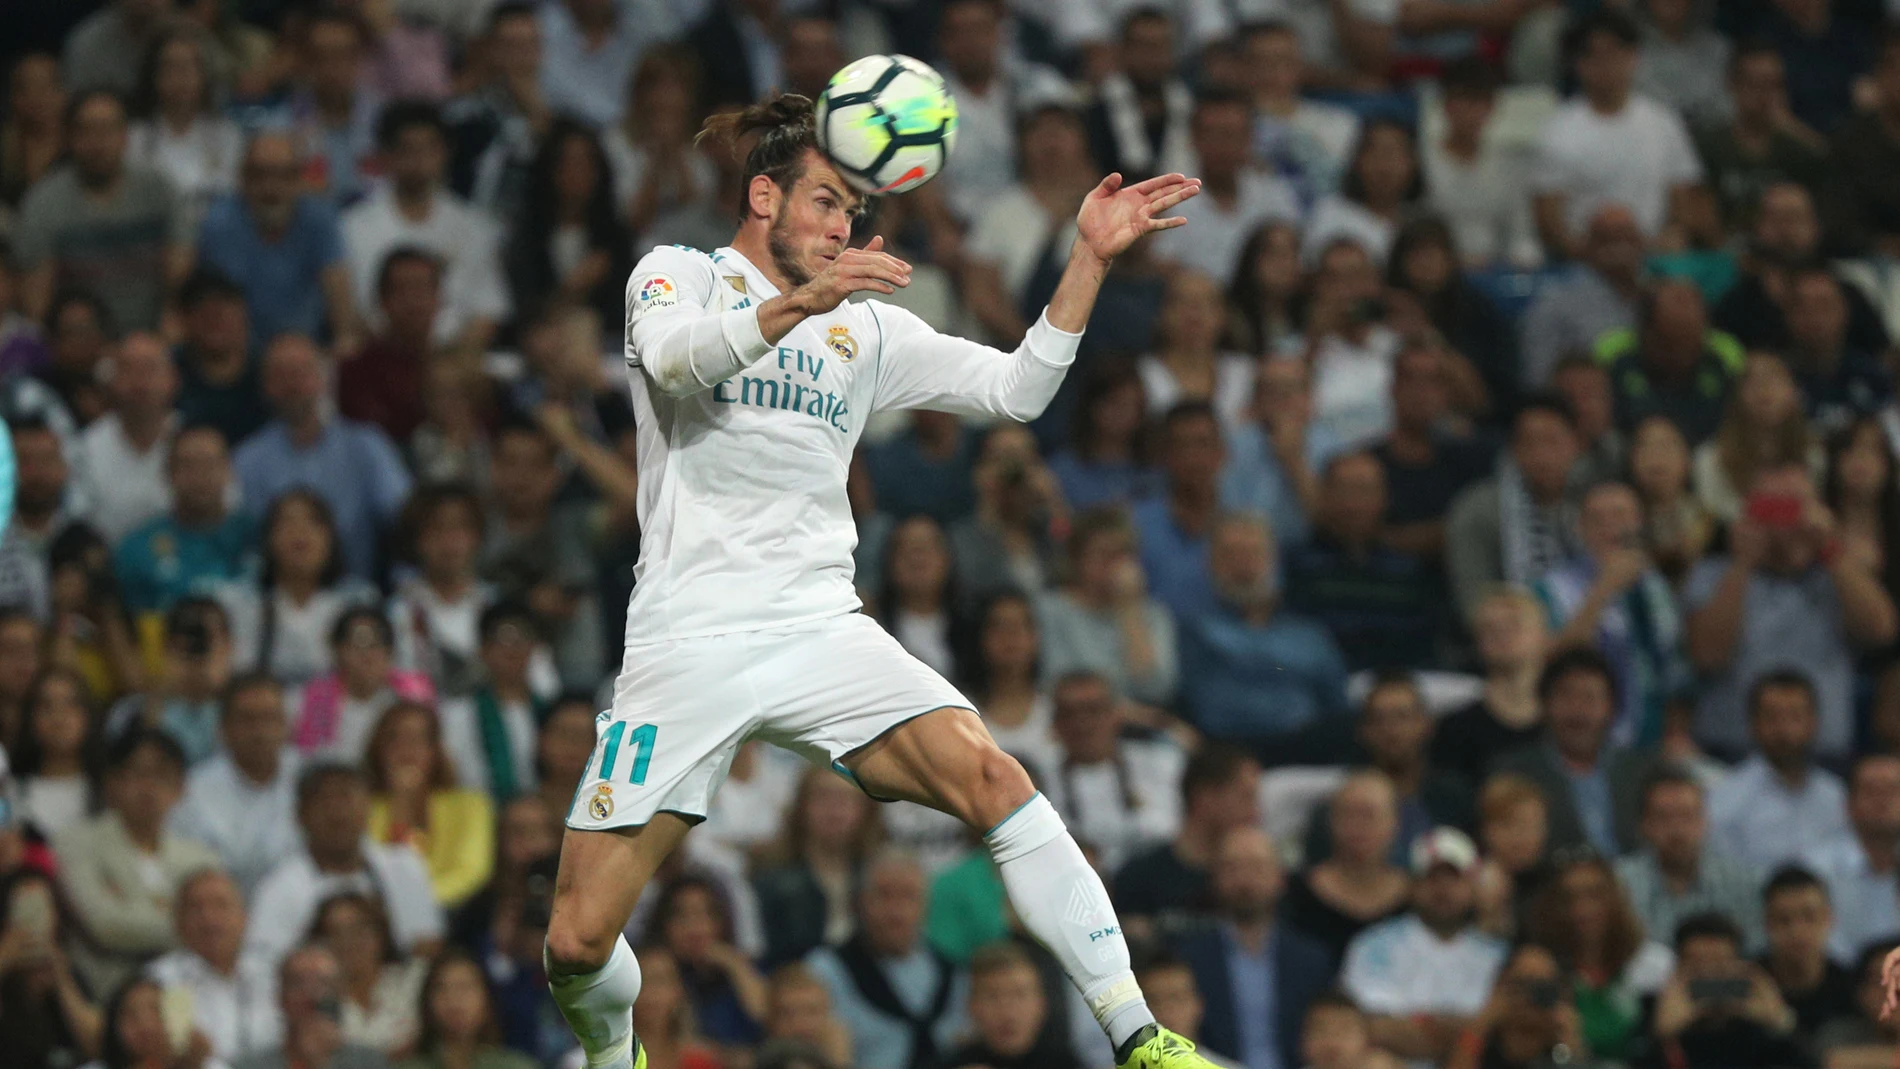 Gareth Bale recibe el balón de cabeza en un partido con el Madrid